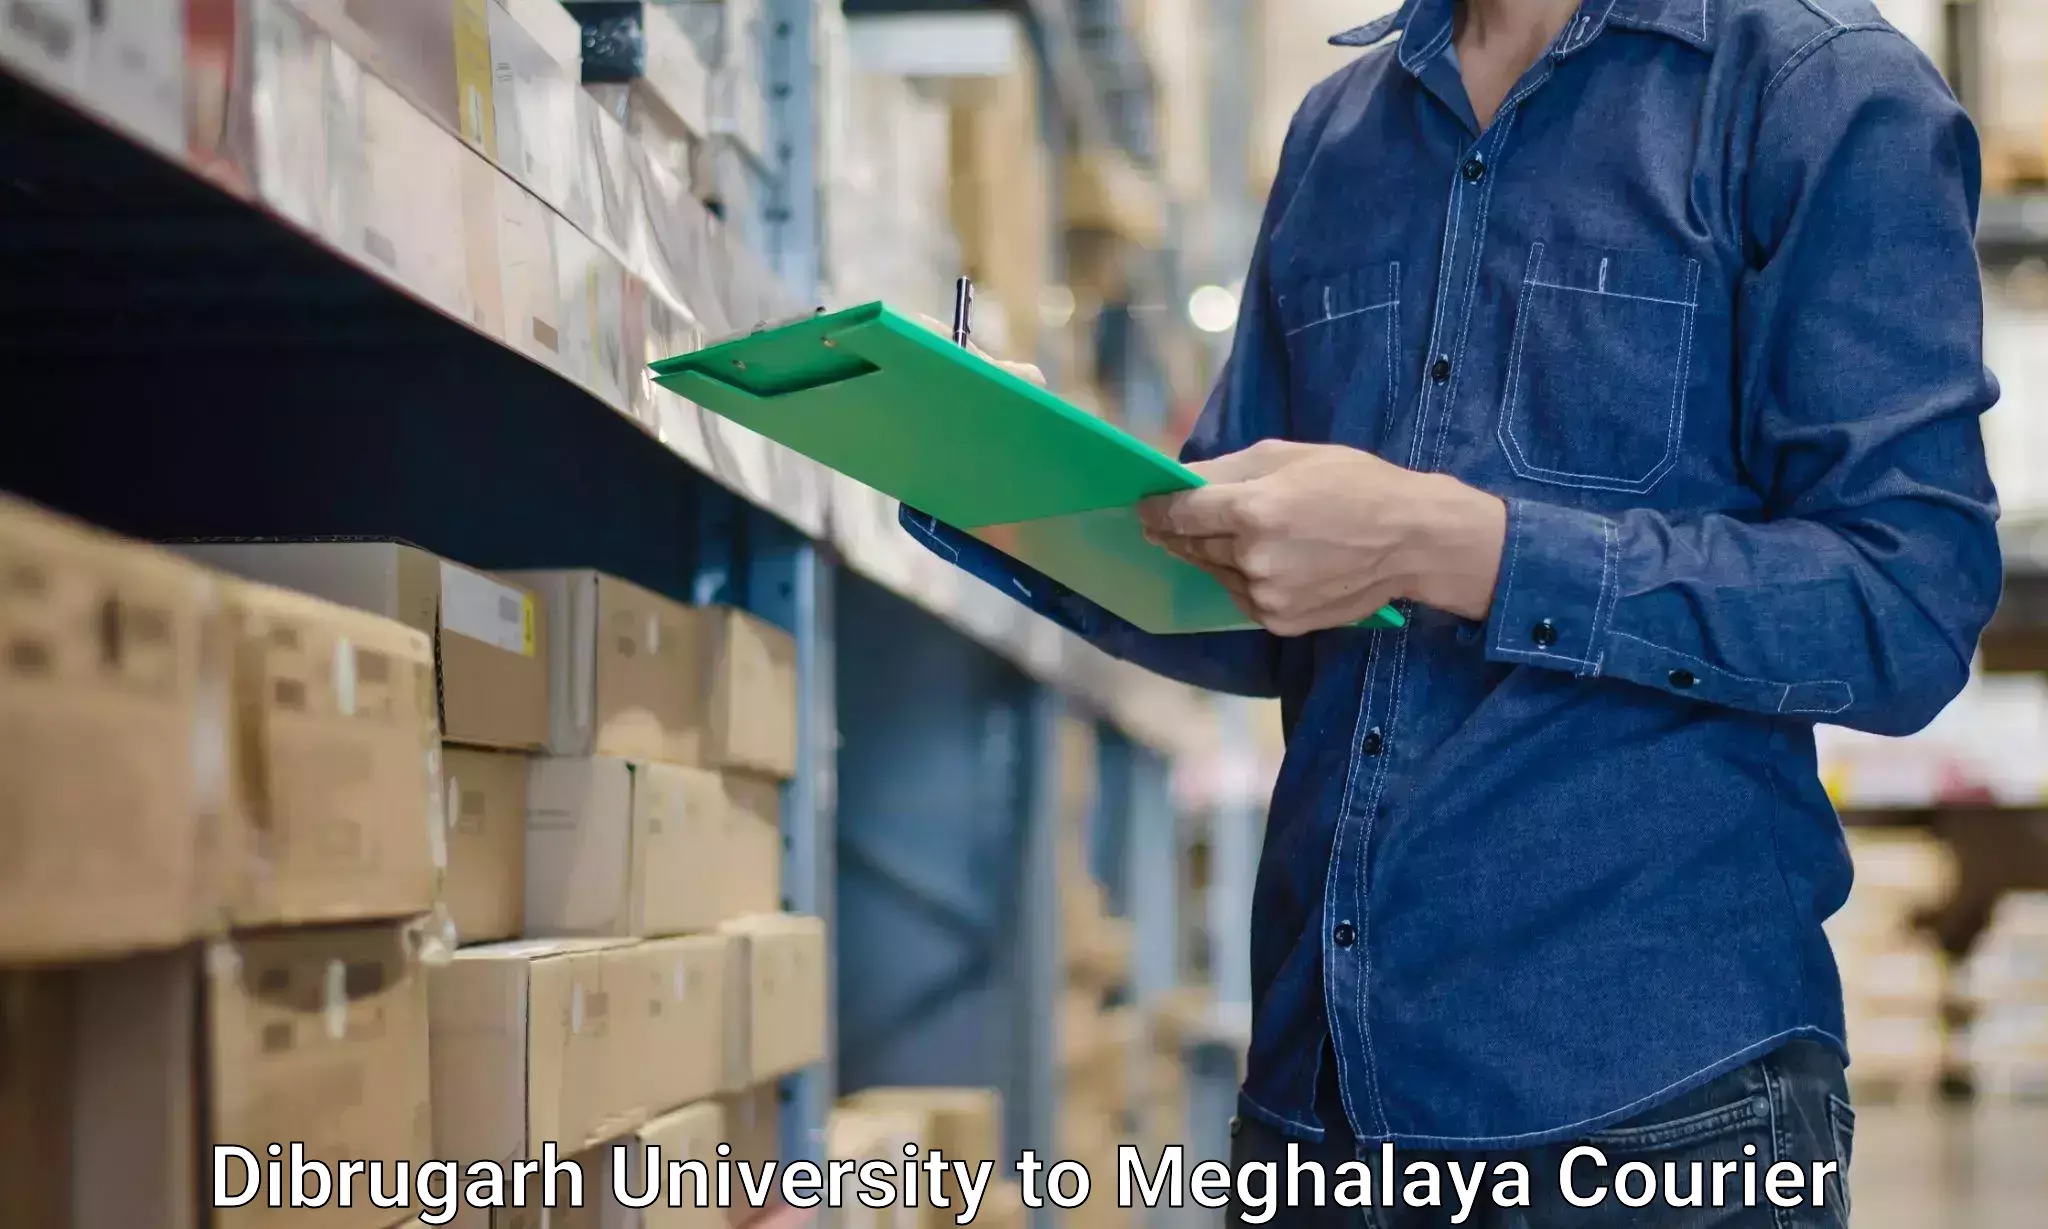 Furniture moving services Dibrugarh University to Meghalaya